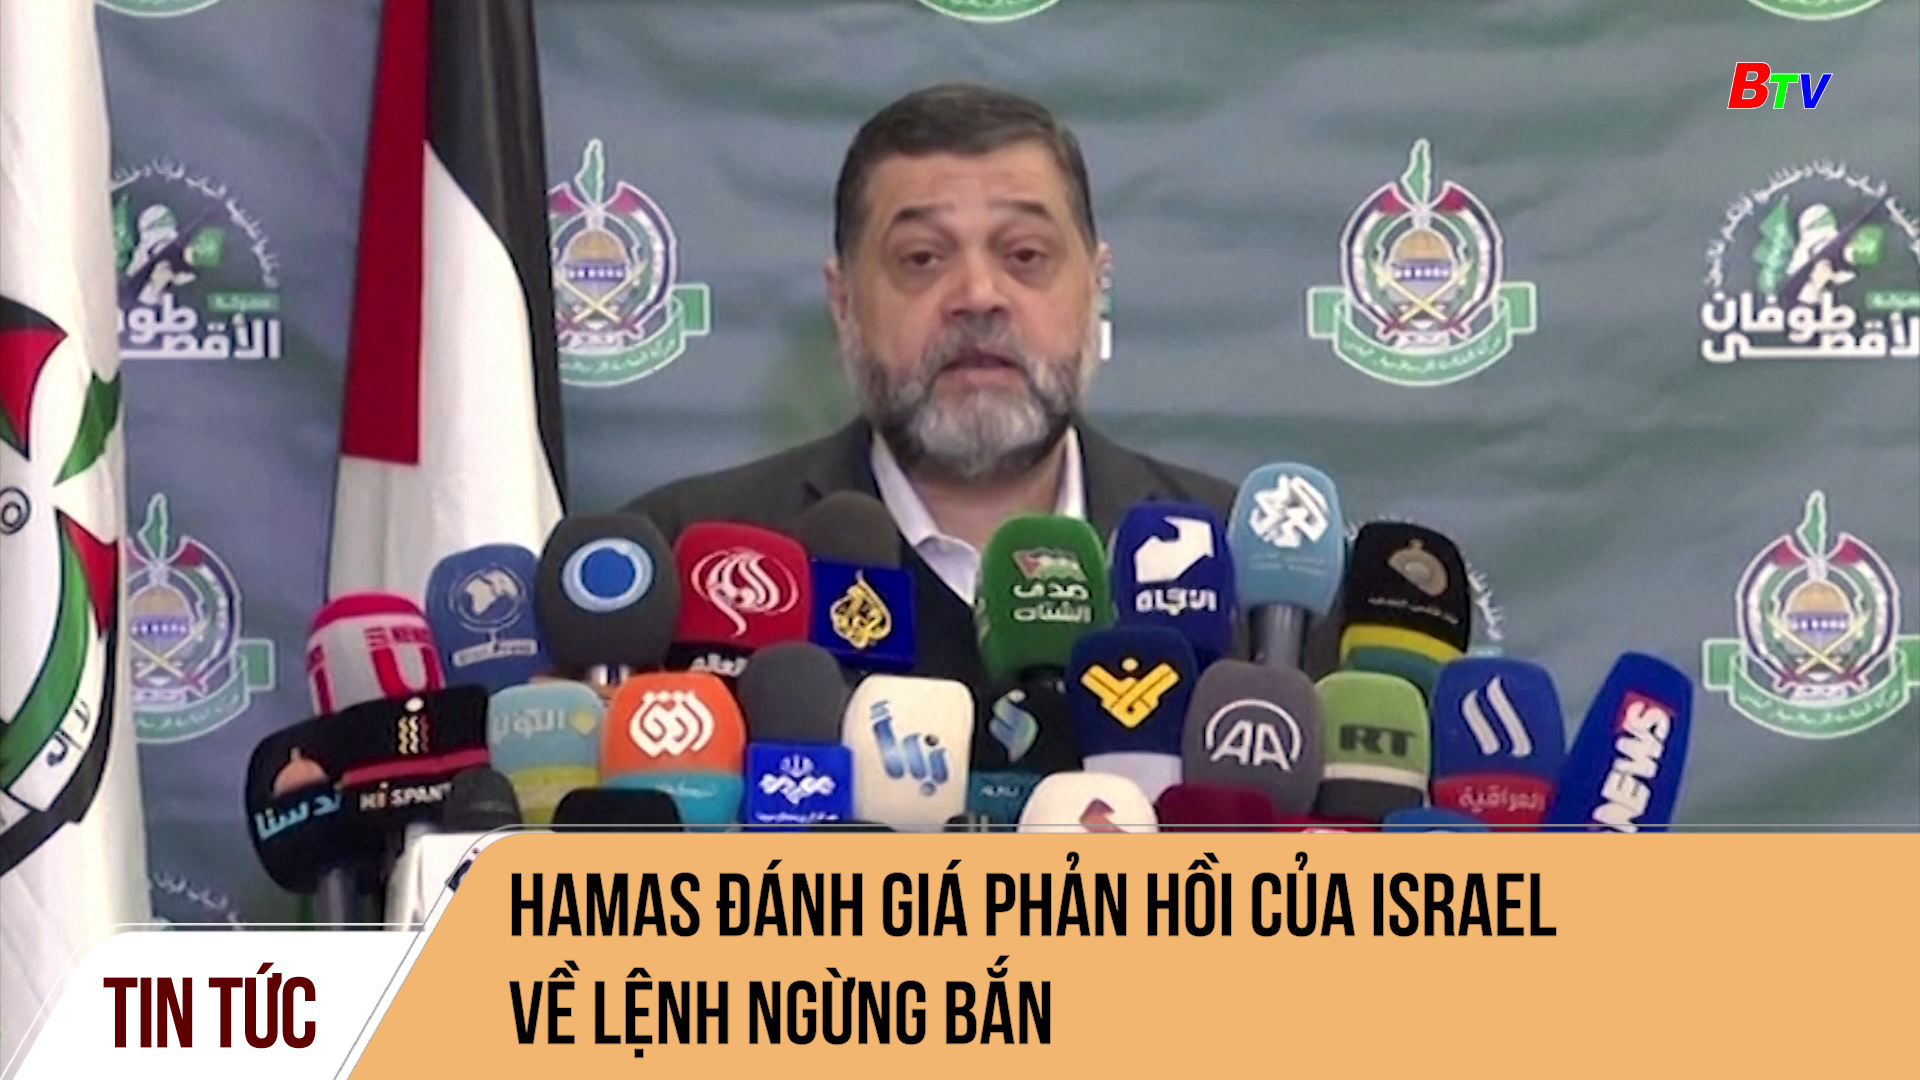 Hamas đánh giá phản hồi của Israel về lệnh ngừng bắn